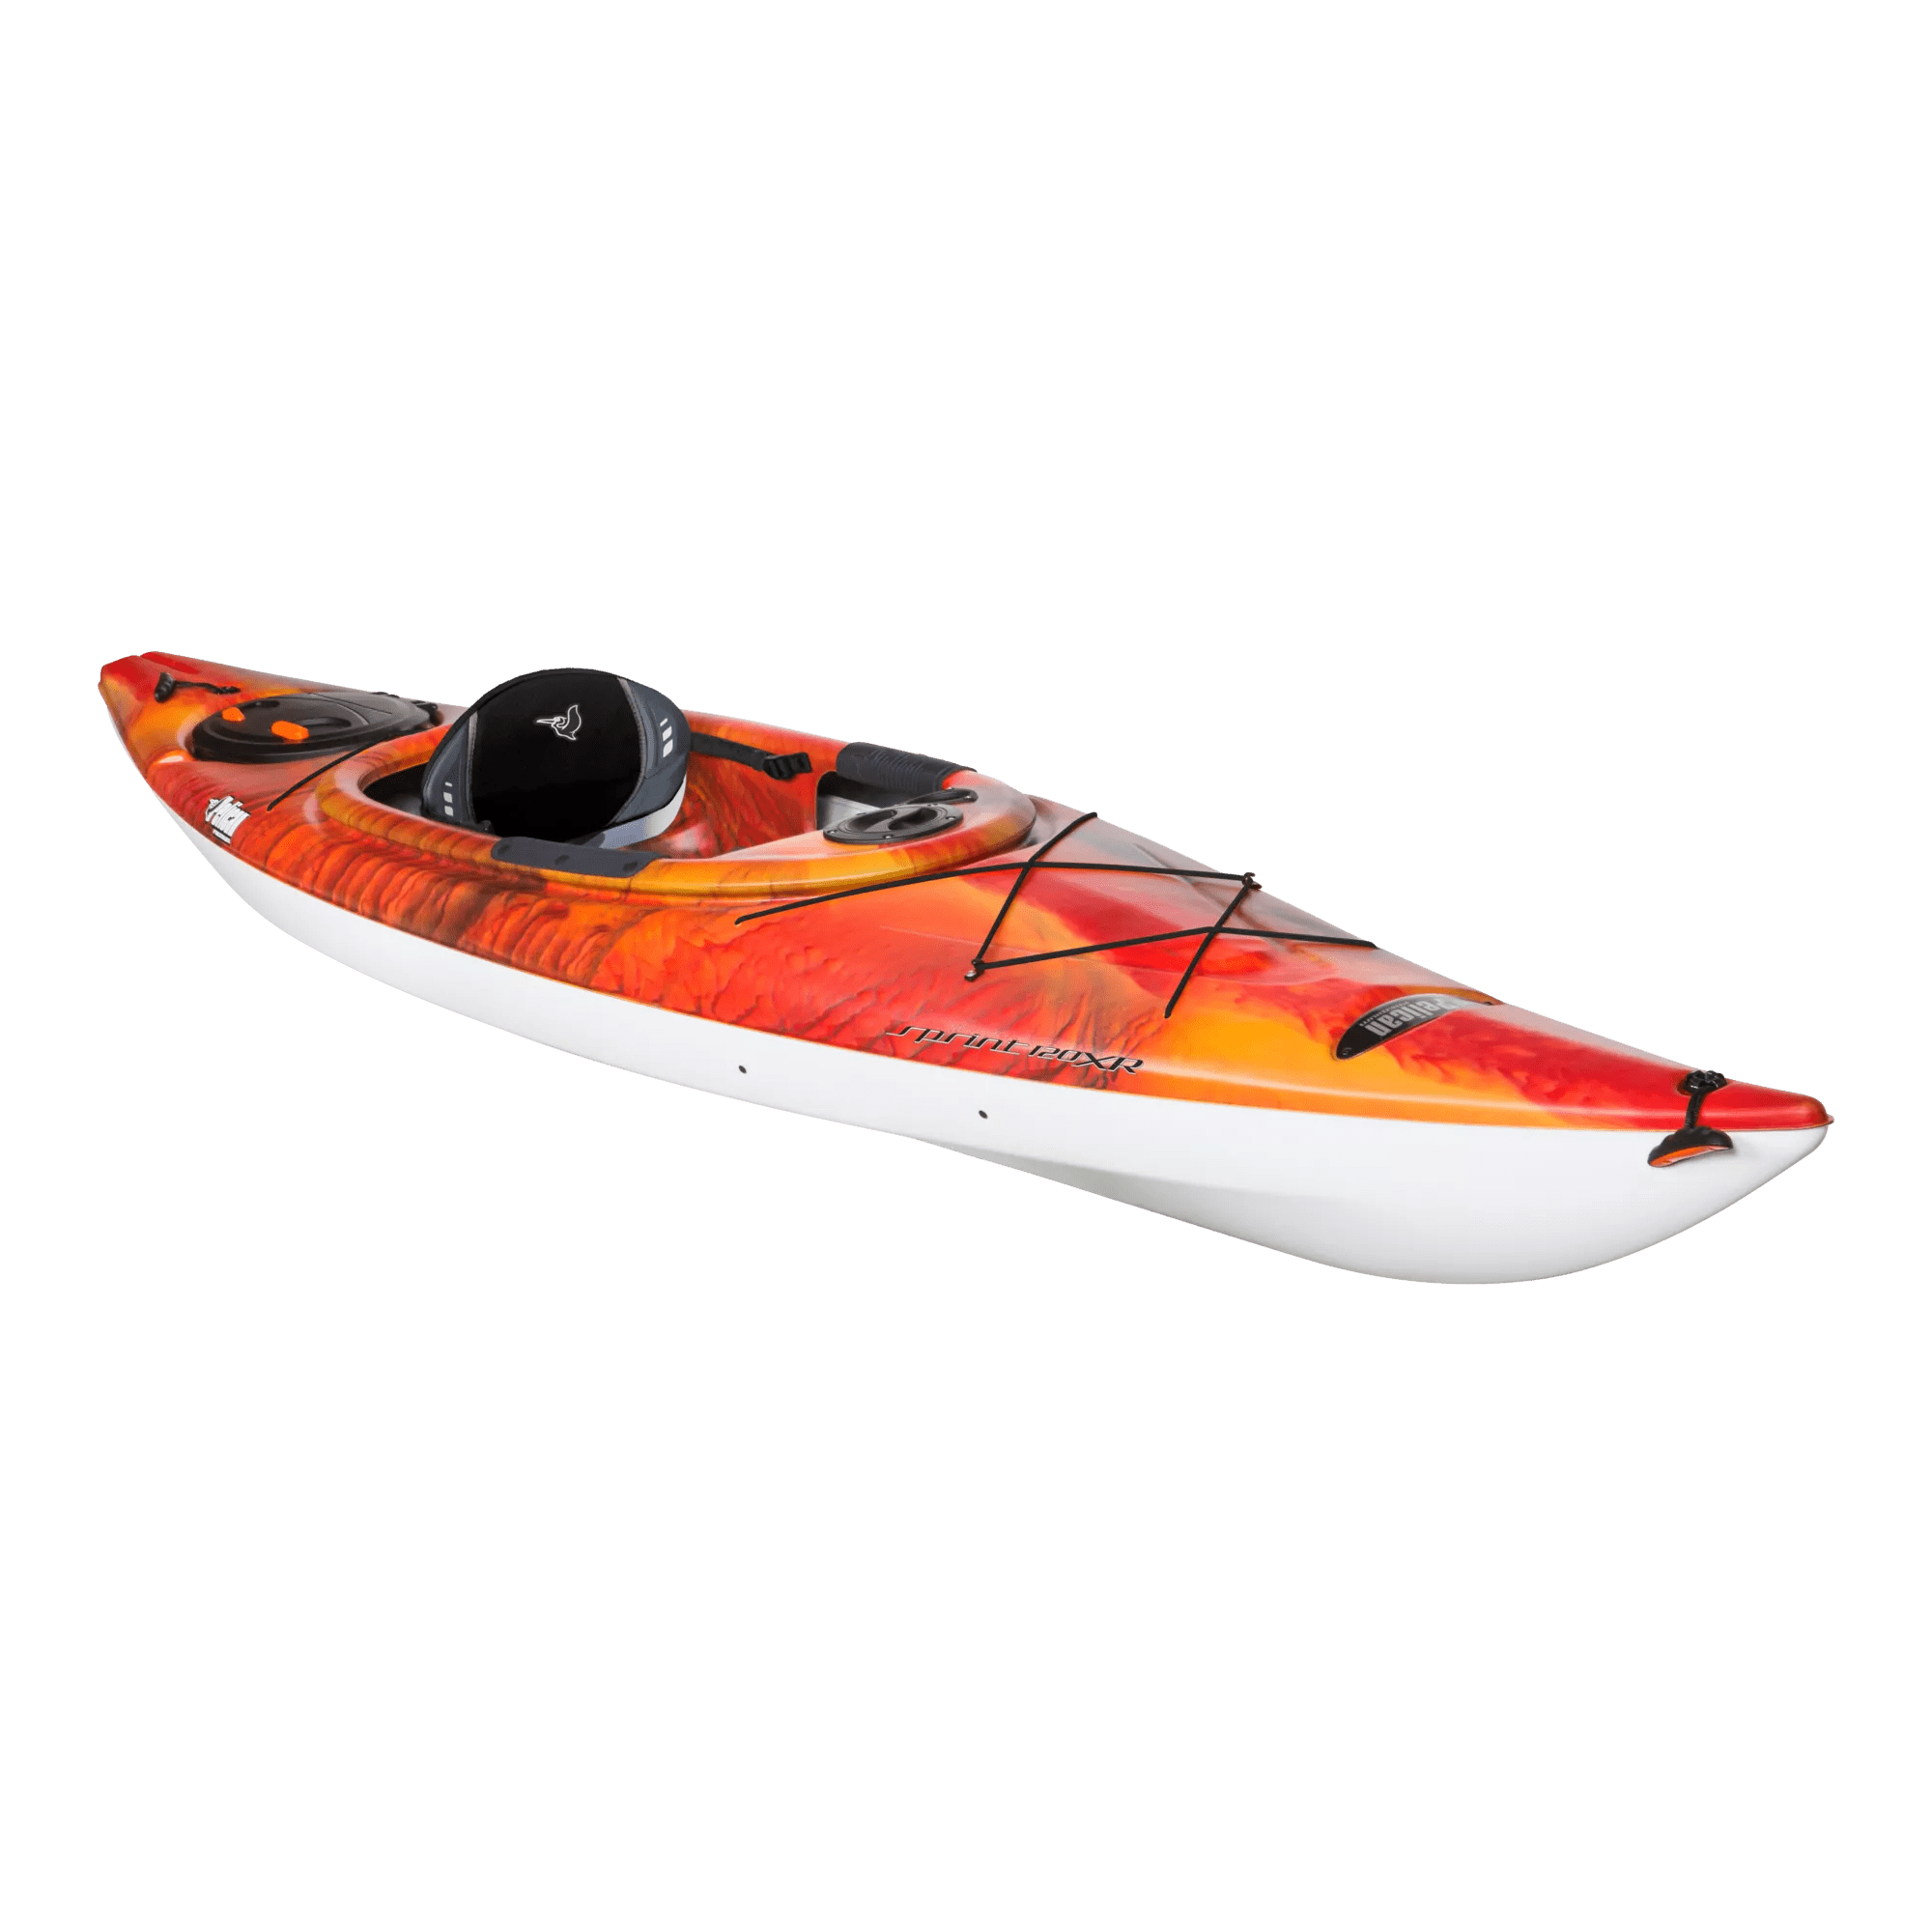 PELICAN - Kayak de performance Sprint 120XR - Modèle ou couleur discontinué - Red - KNP12P100-00 - ISO 